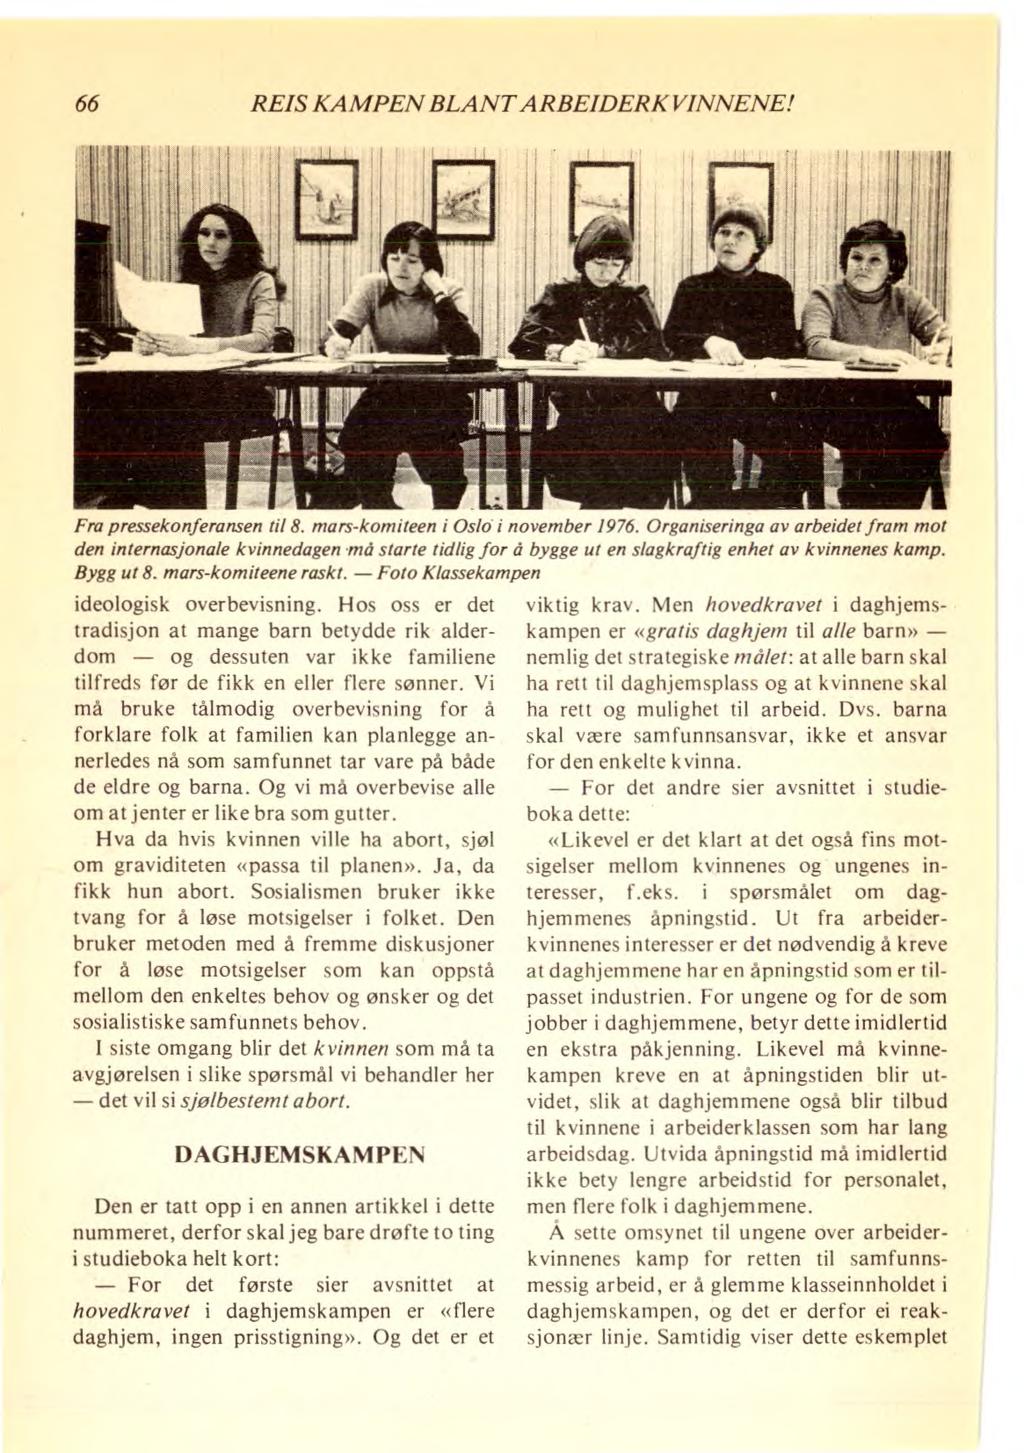 66 REIS KAMPEN BLANT ARBEIDERKVINNENE! Fra pressekonferansen til 8. mars-komiteen i Oslo i november 1976. Organiseringa av arbeidet fram mot den internasjonale kvinnedagen.